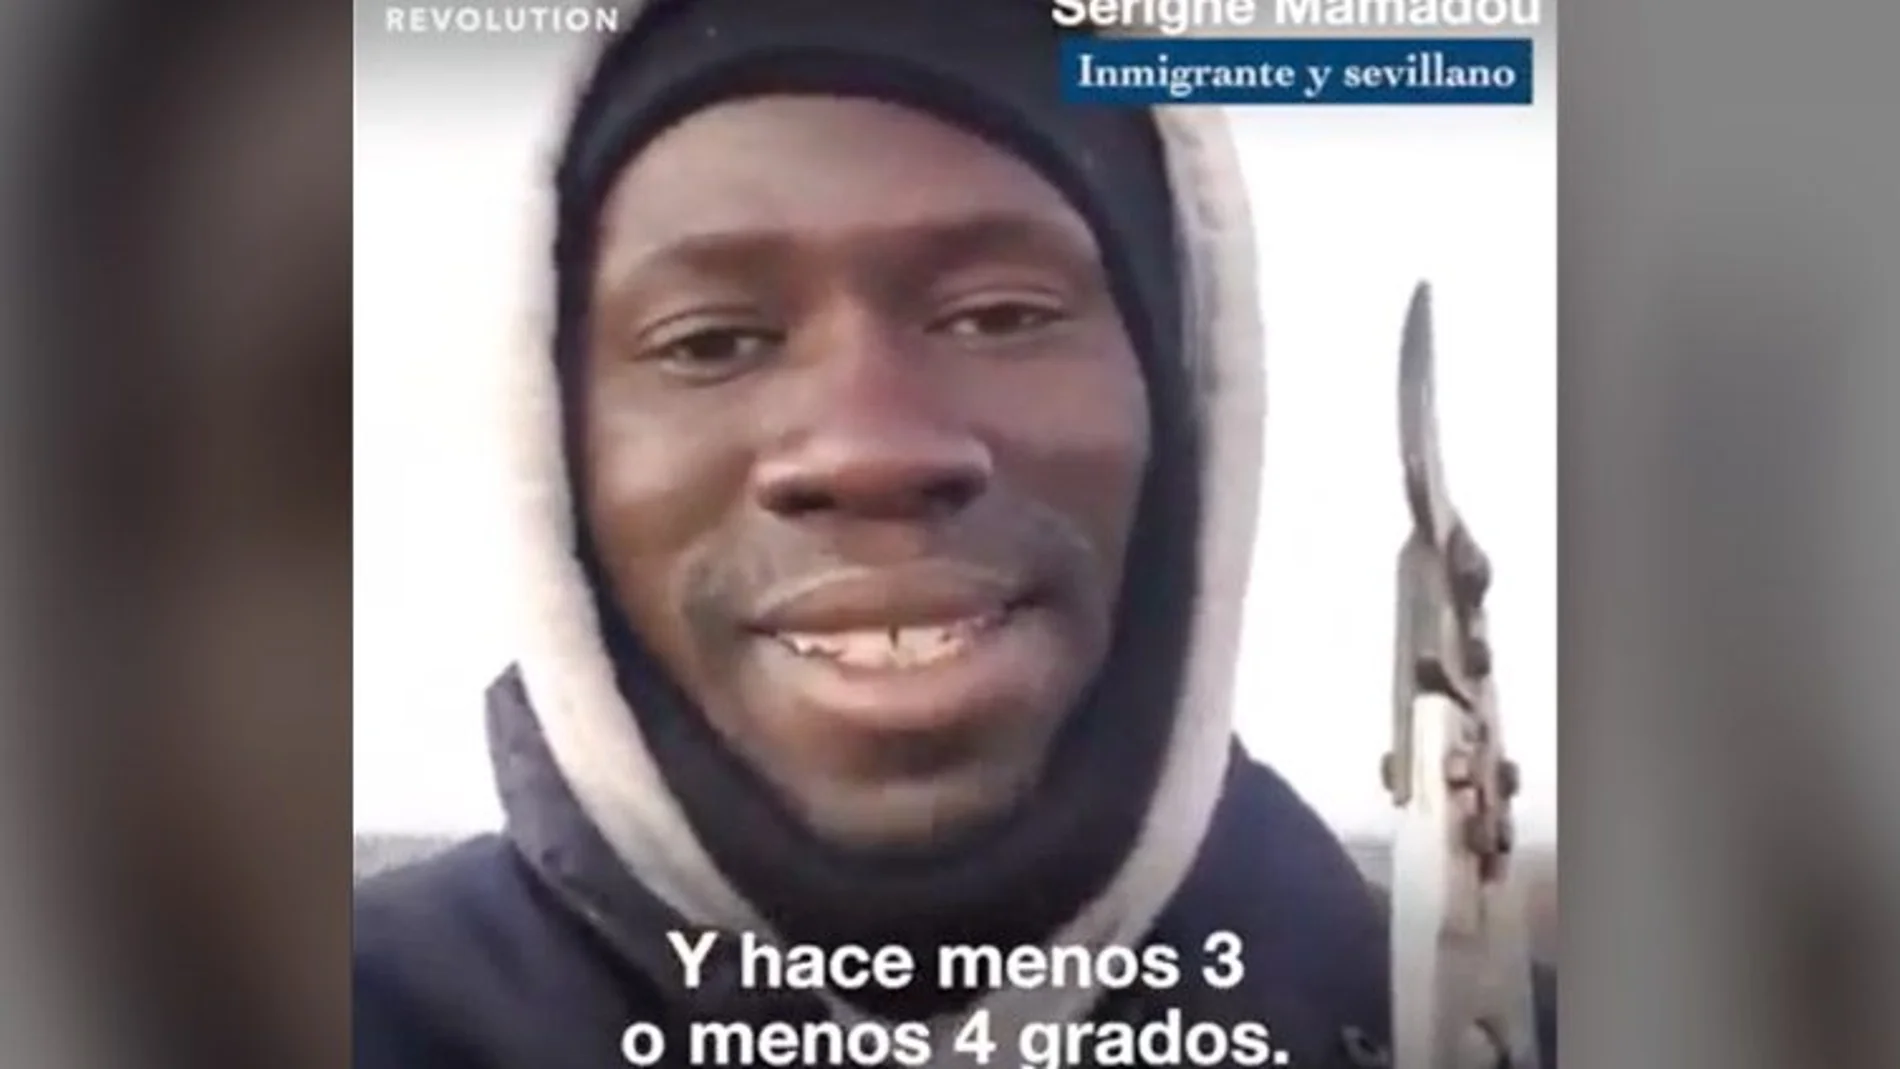 Serigne Mamadou es un inmigrante que trabaja en el campo y ha querido mandar un mensaje a Vox a través de un vídeo / YouTube